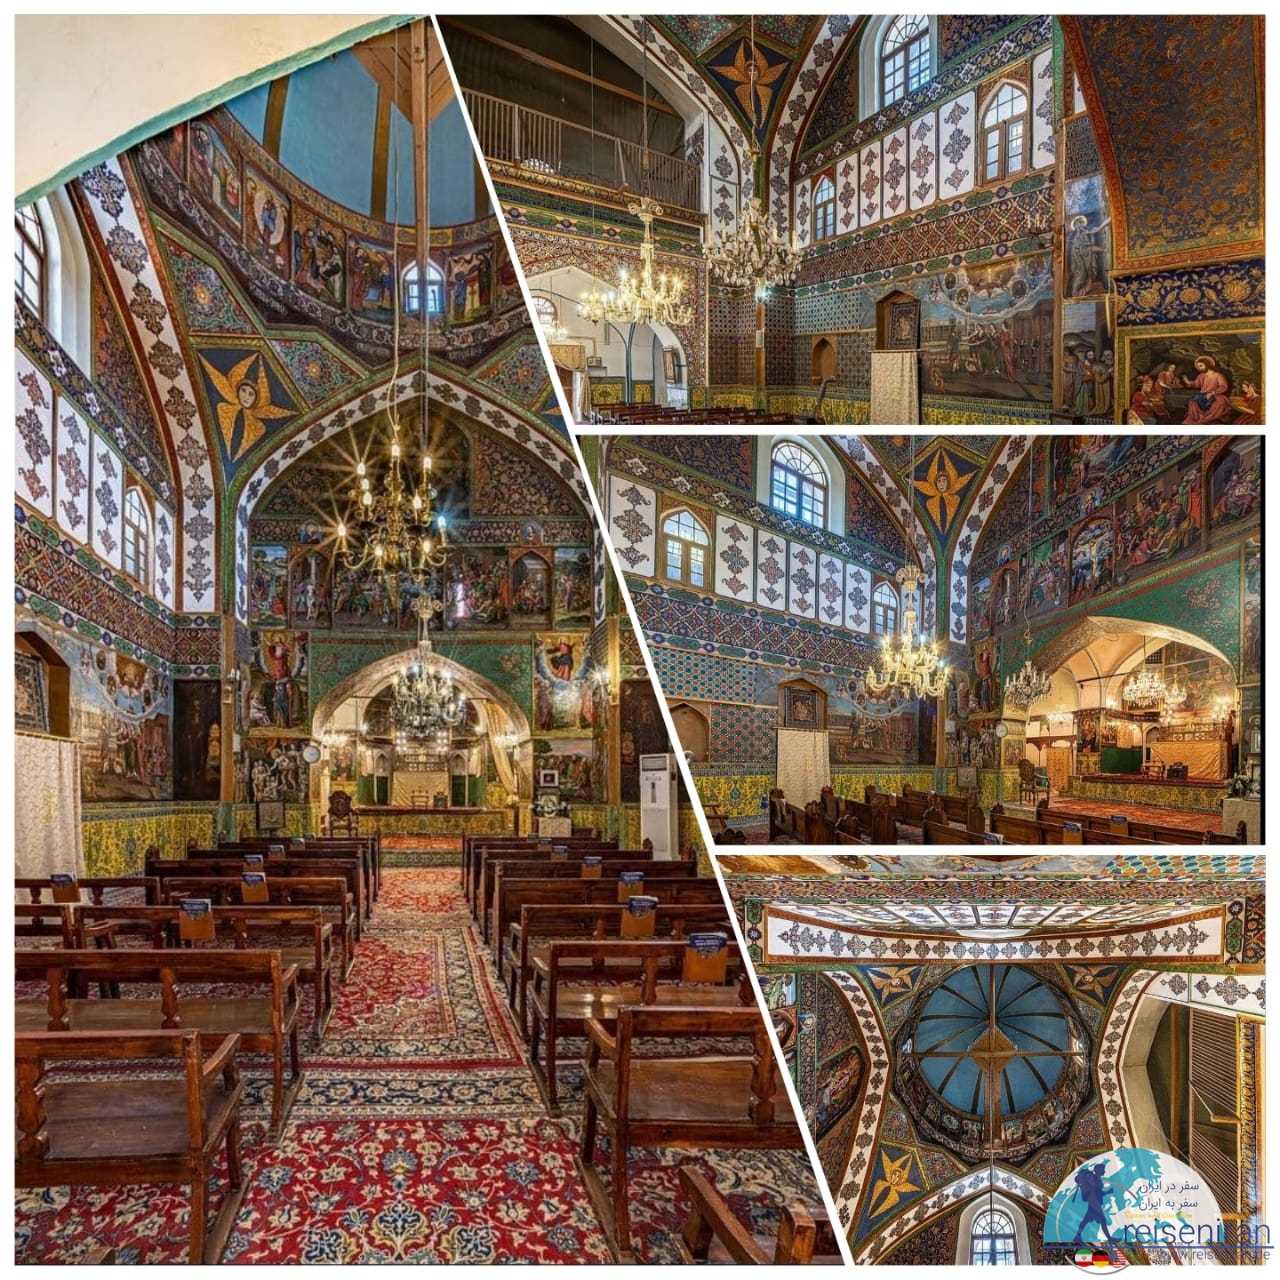 كليساي مريم مقدس اصفهان(کلیسا آسدوادزادزين شهر اصفهان)